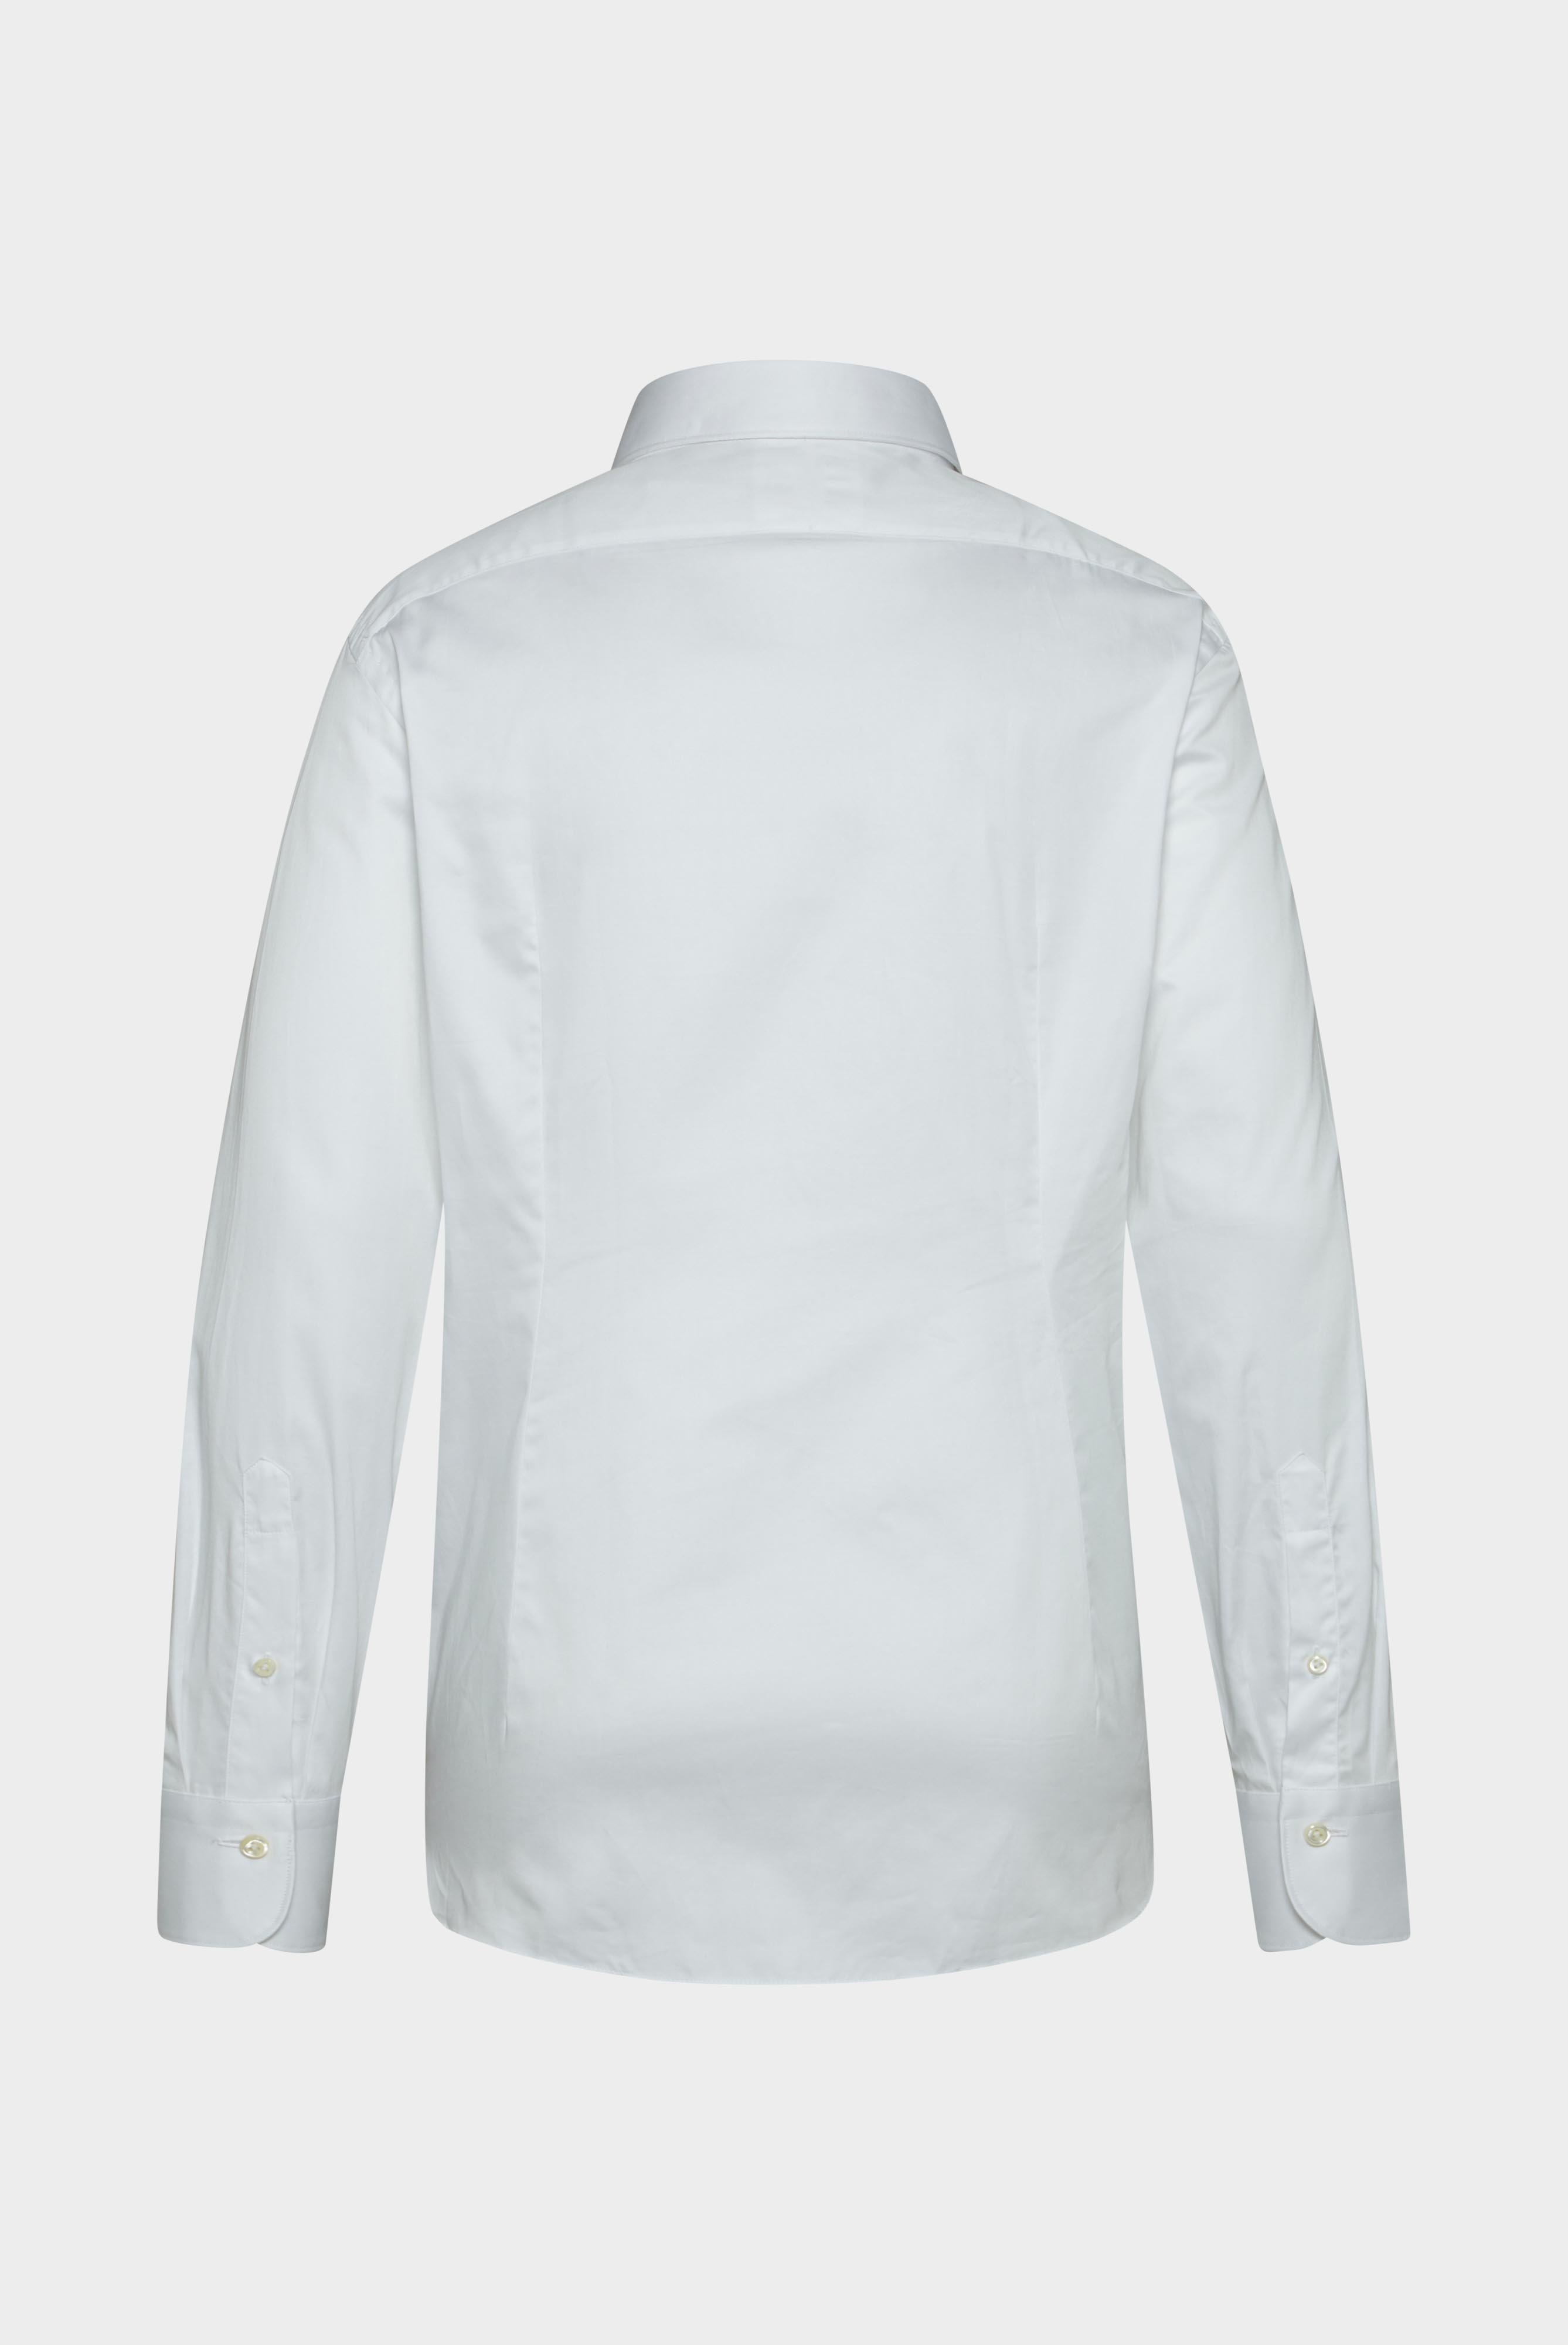 Meisterwerk Shirts+Structured Cotton Shirt+20.2502.NV.130972.000.41